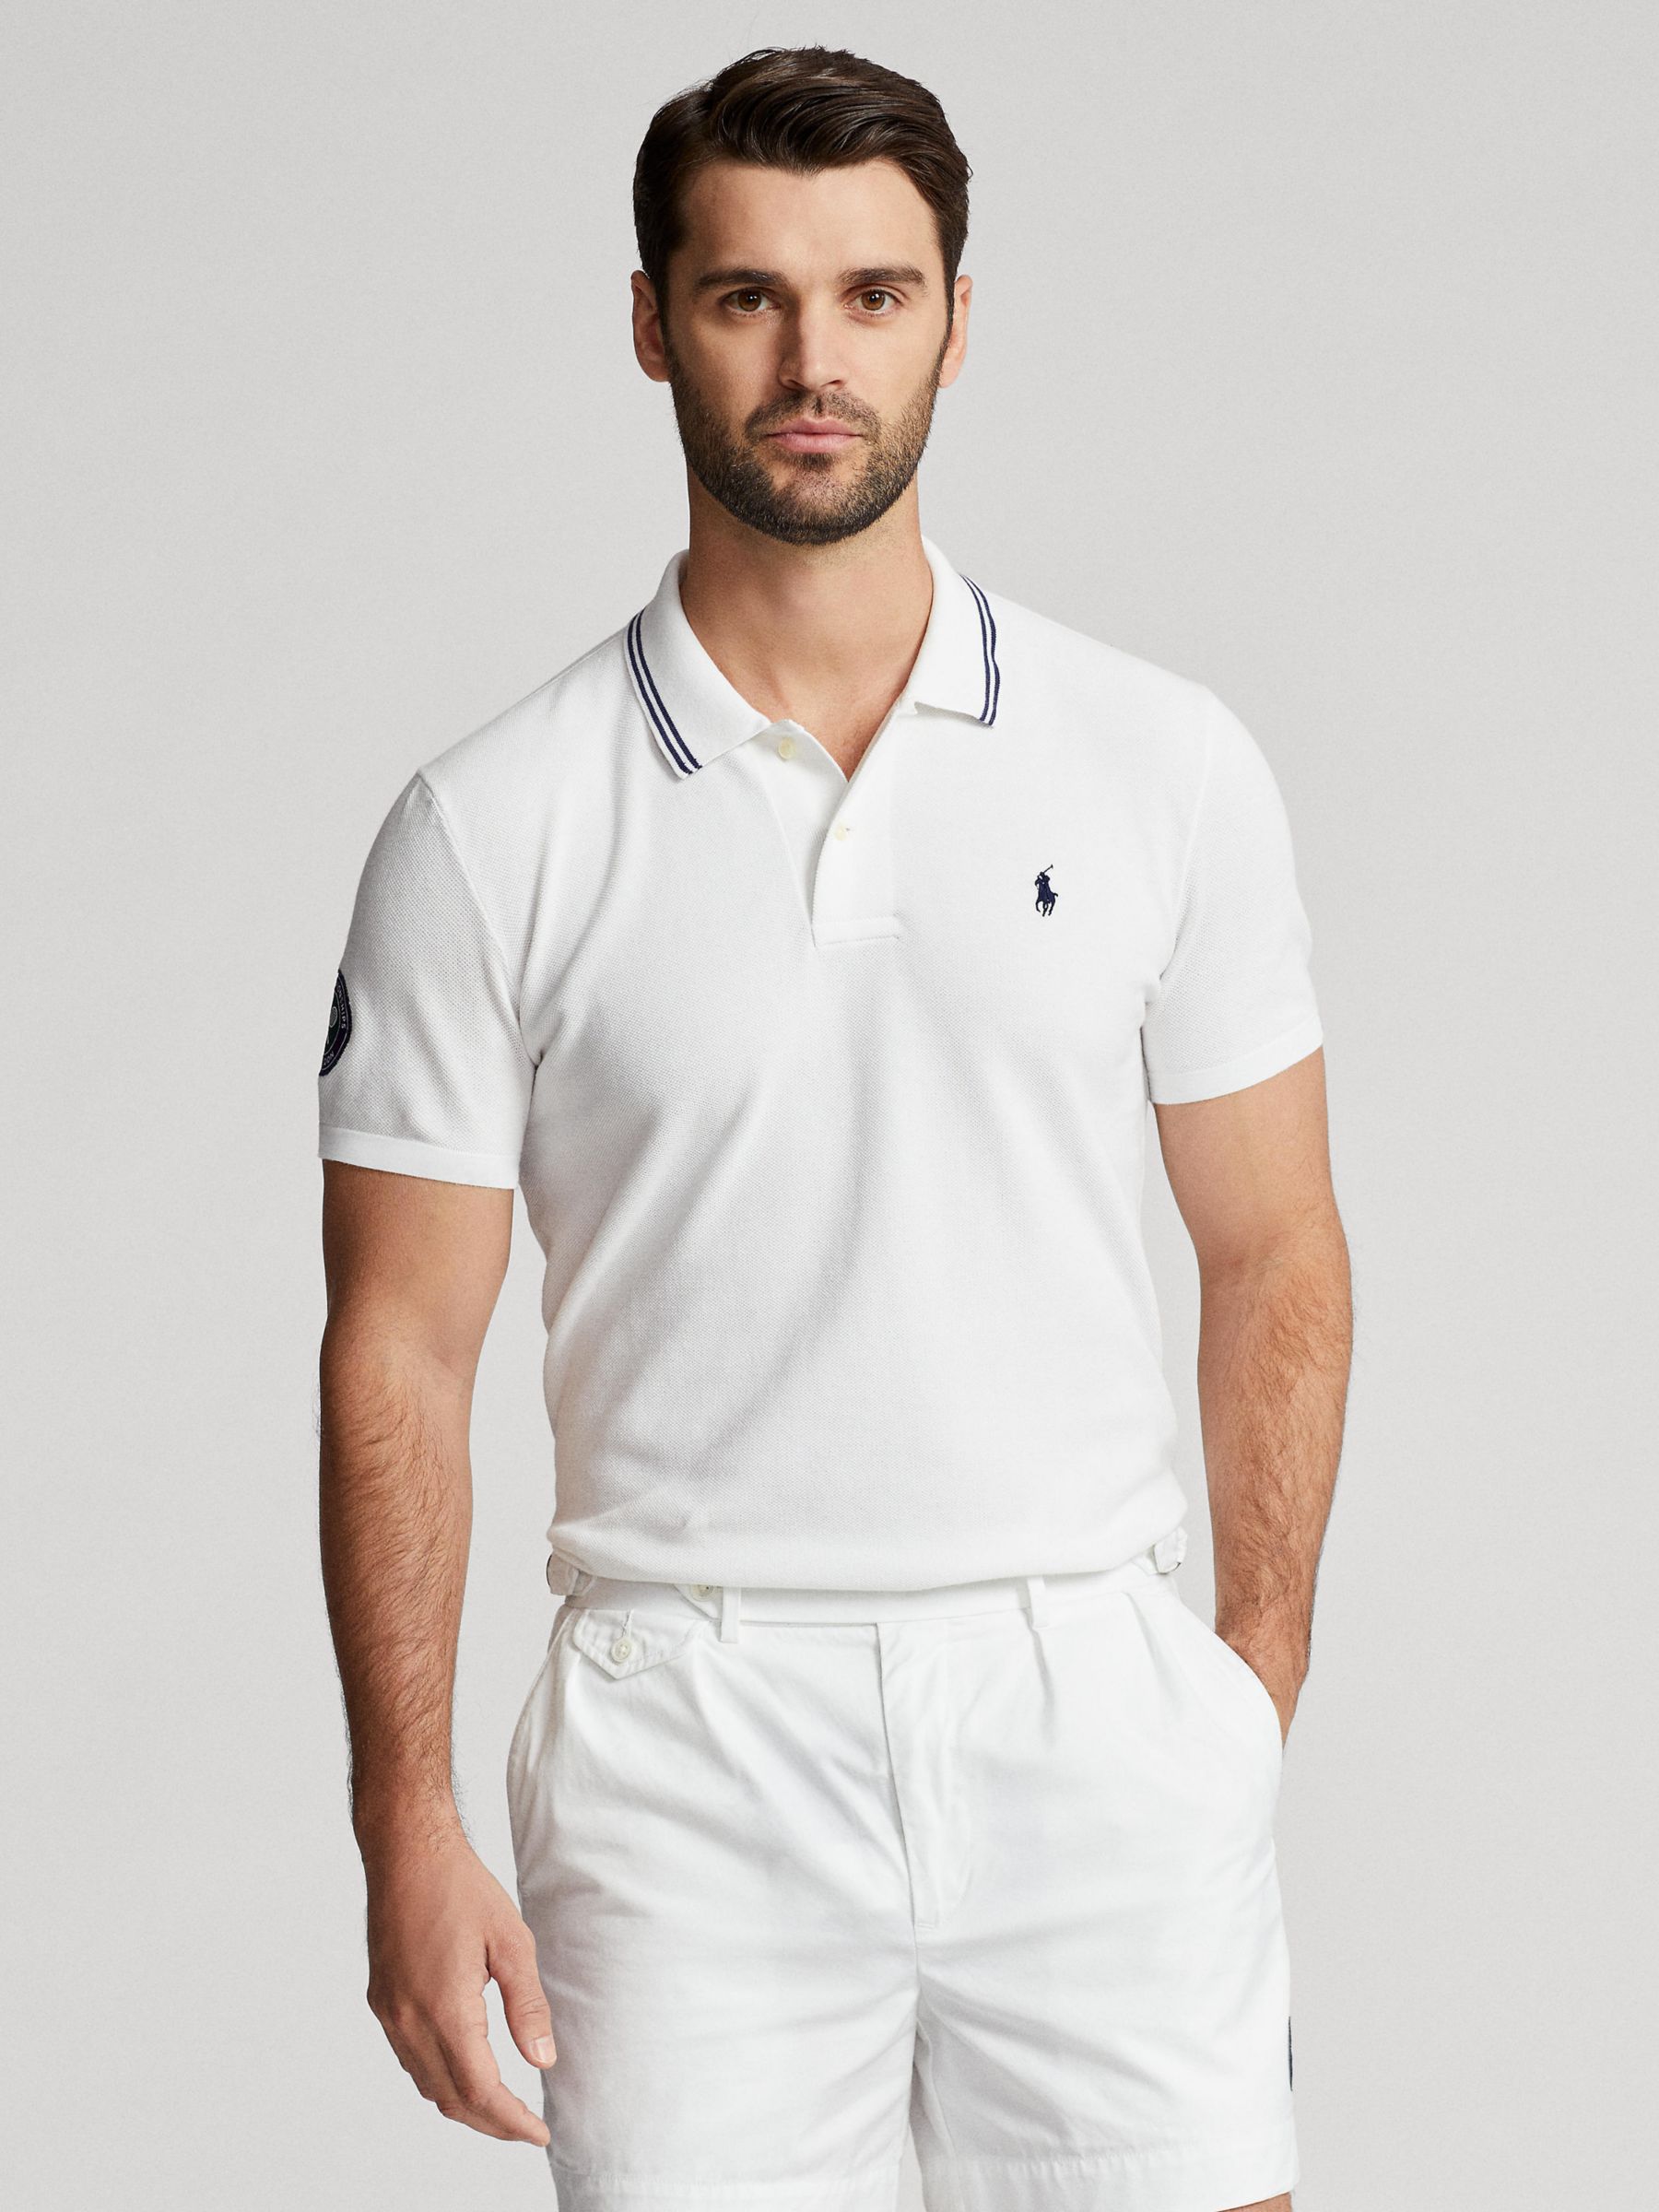 The Wimbledon Online Shop ︳ Official Wimbledon x Polo Ralph